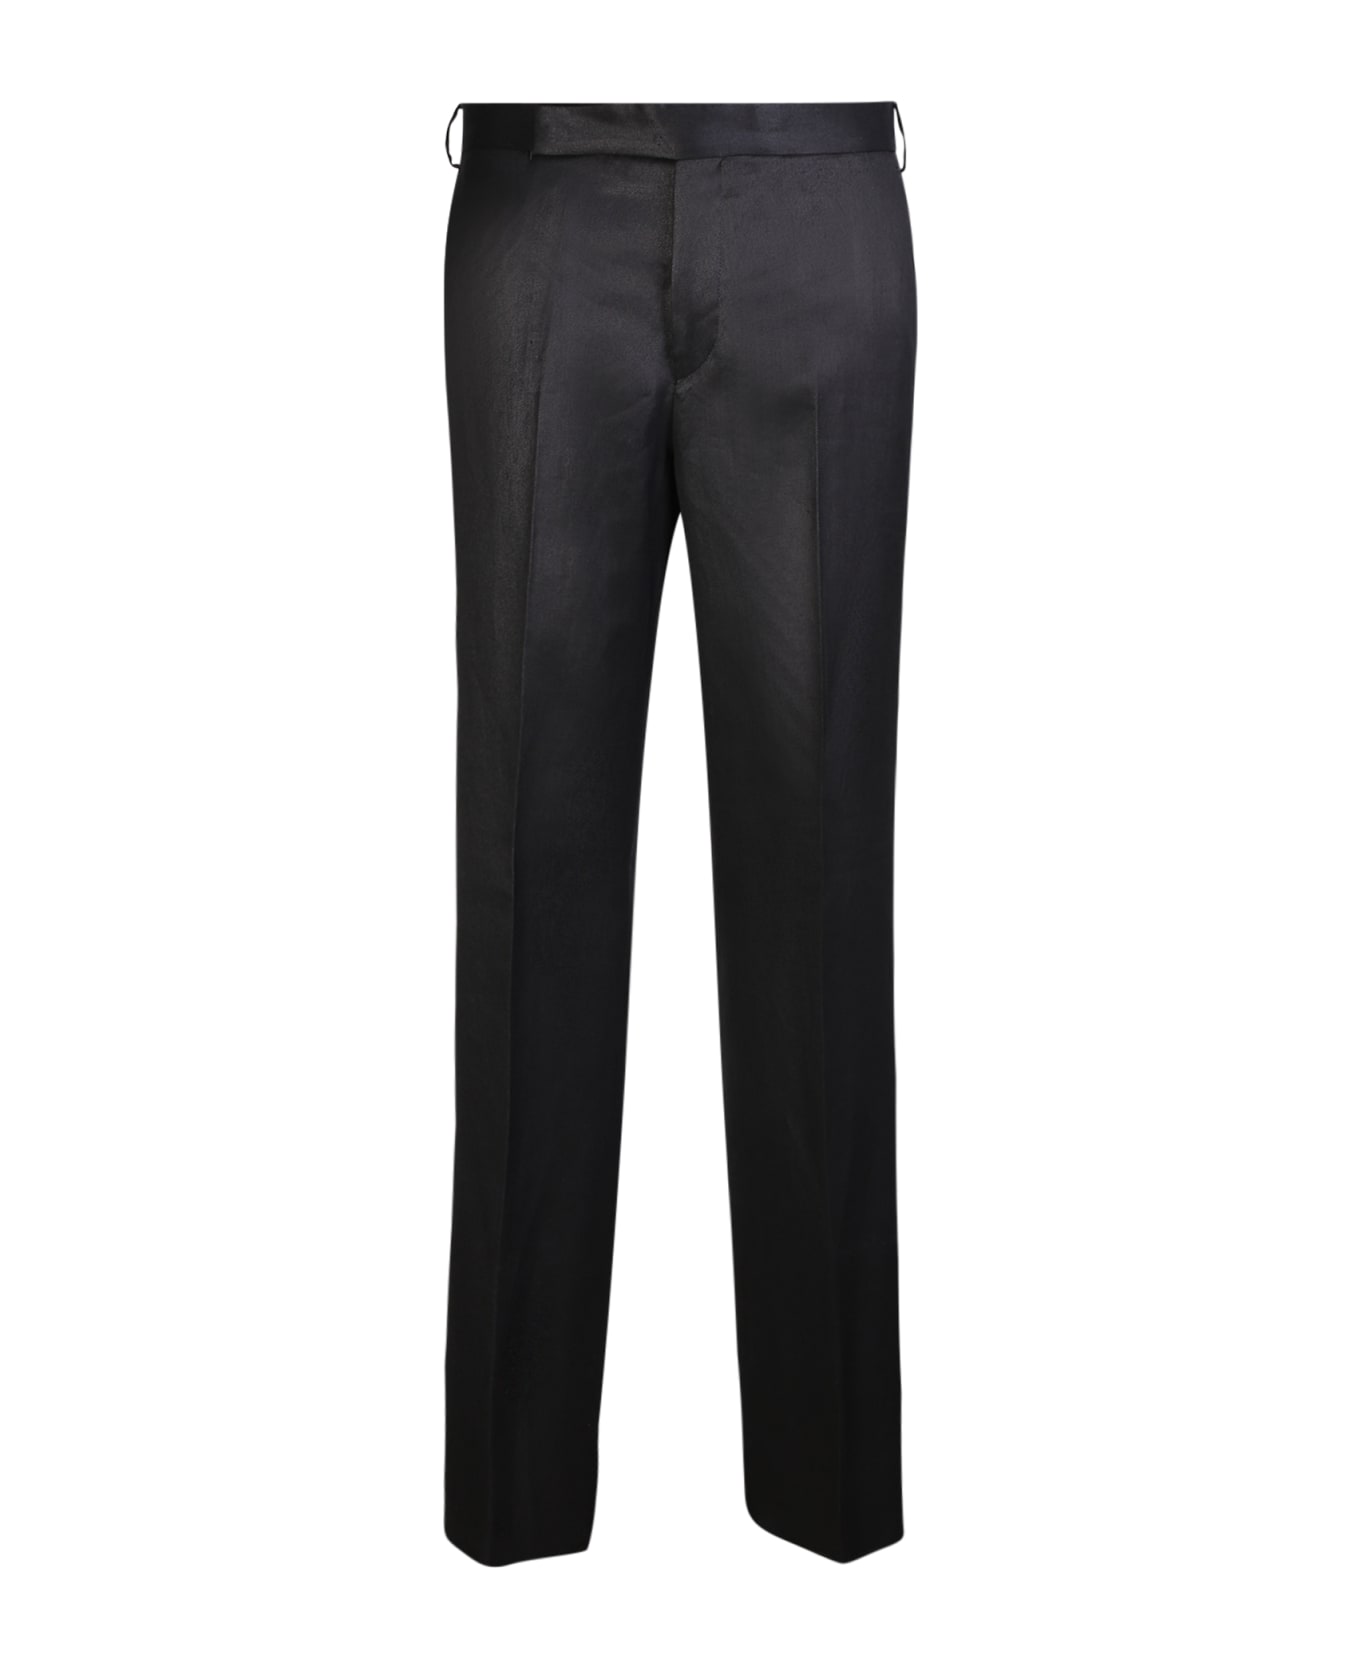 Lardini Linen Black Trousers - Black